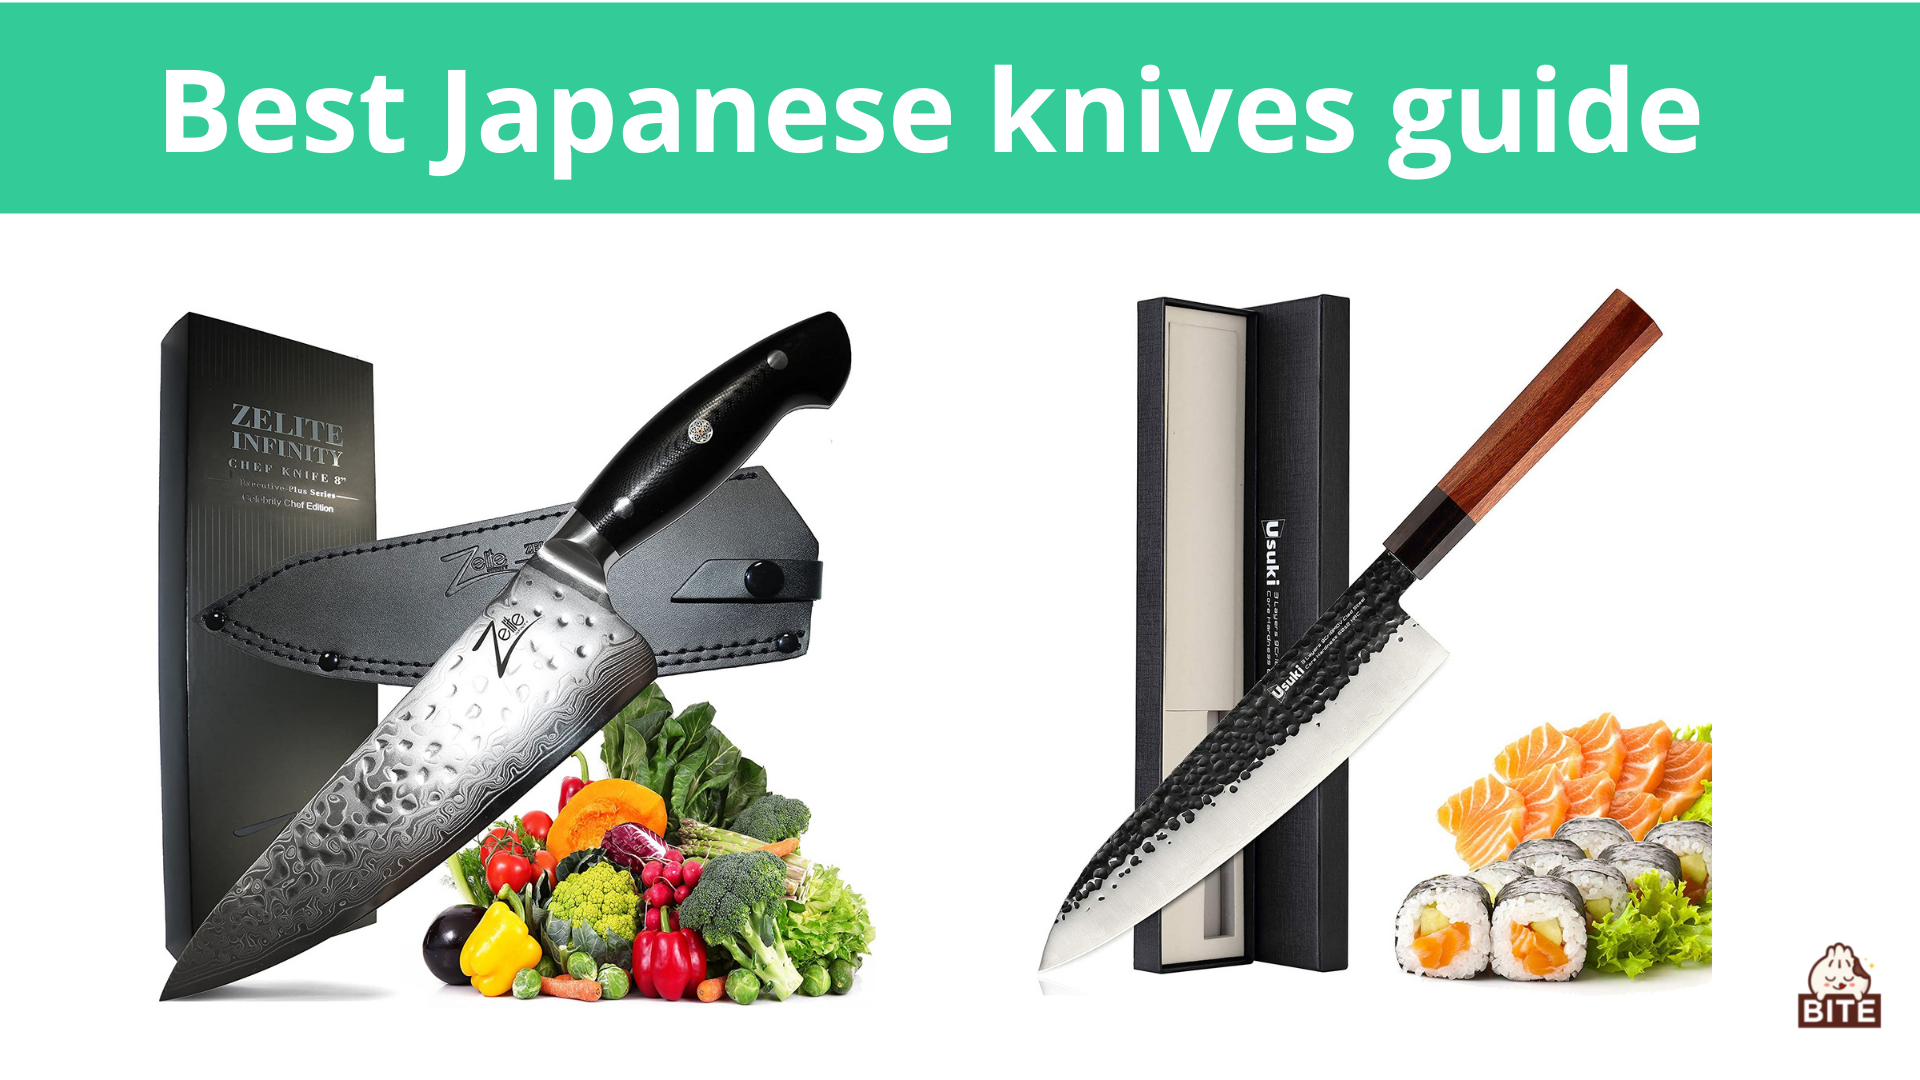 La mejor guía de cuchillos japoneses | Estos son los diferentes cuchillos imprescindibles en la cocina japonesa